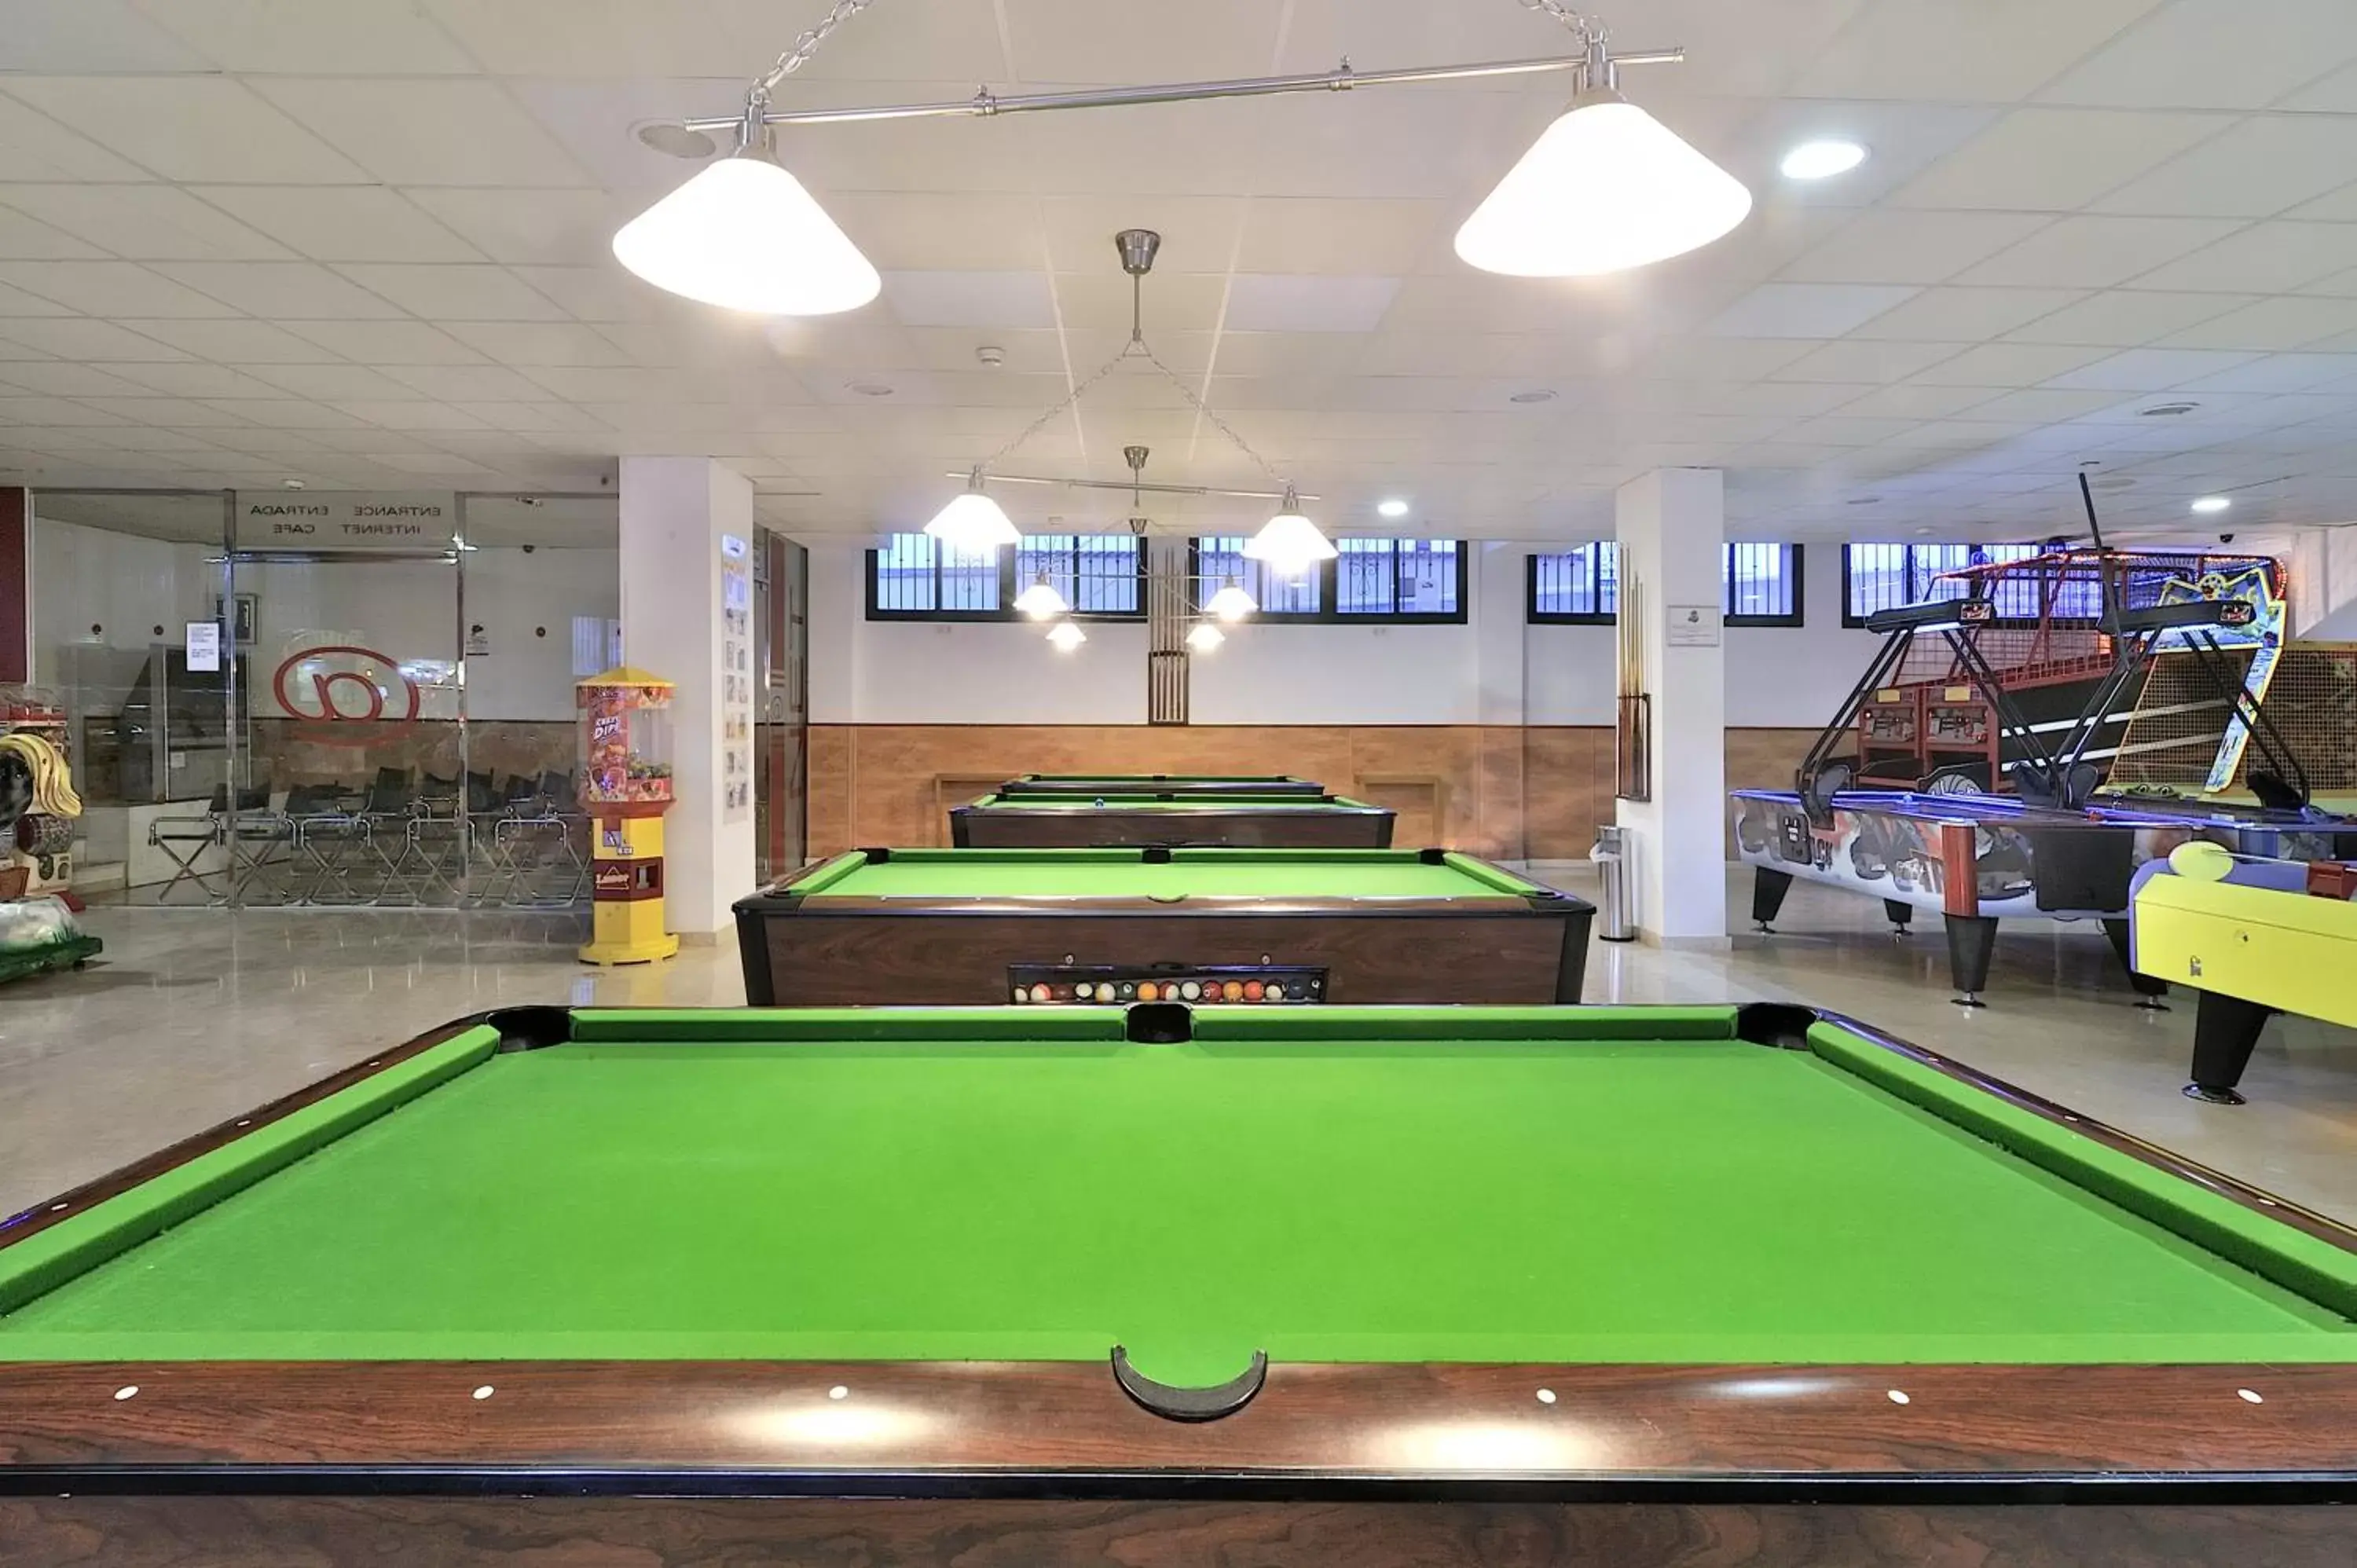 Game Room, Billiards in Benalmadena Palace Spa